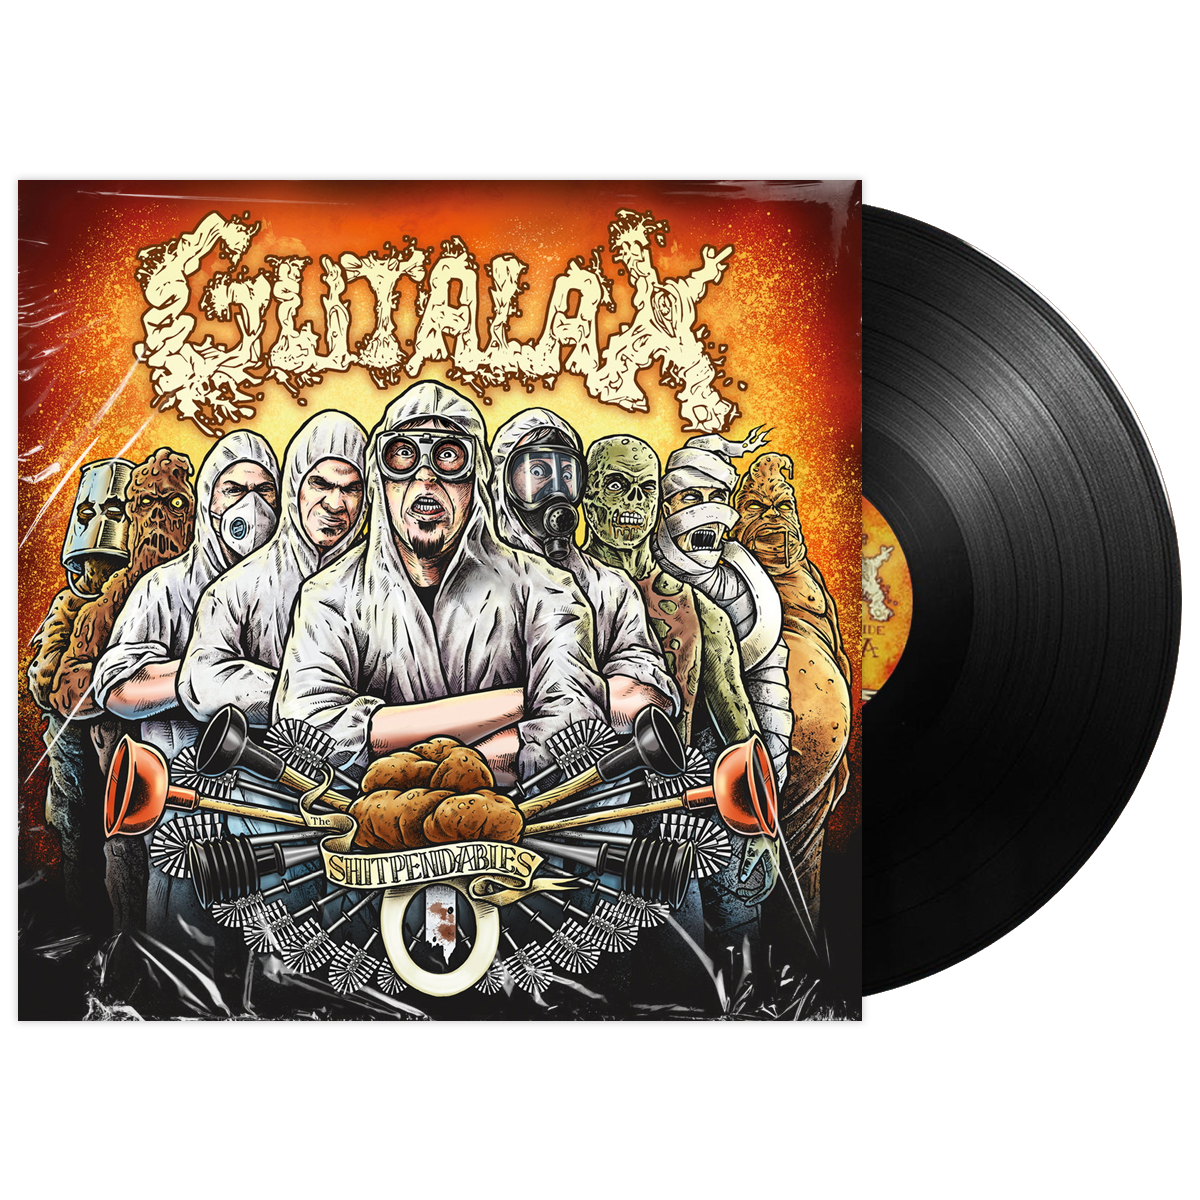 Gutalax 'The Shitpendables' LP